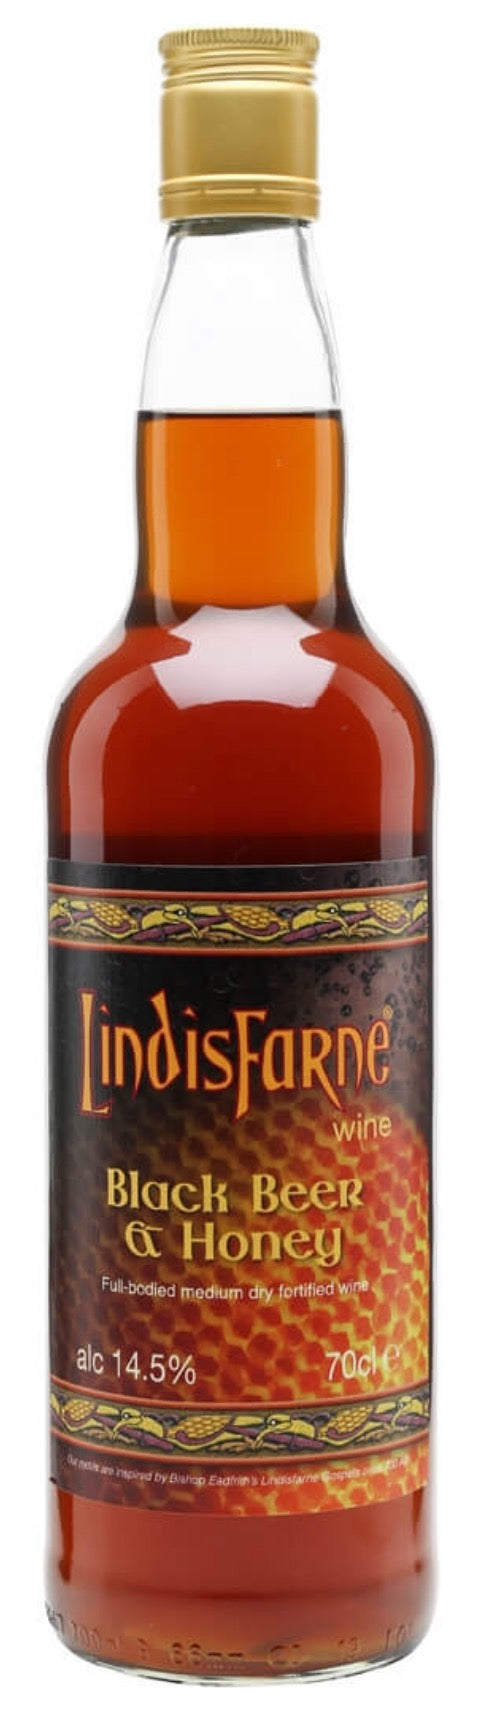 Lindisfarne Black Beer & Honey Wine 14.5%